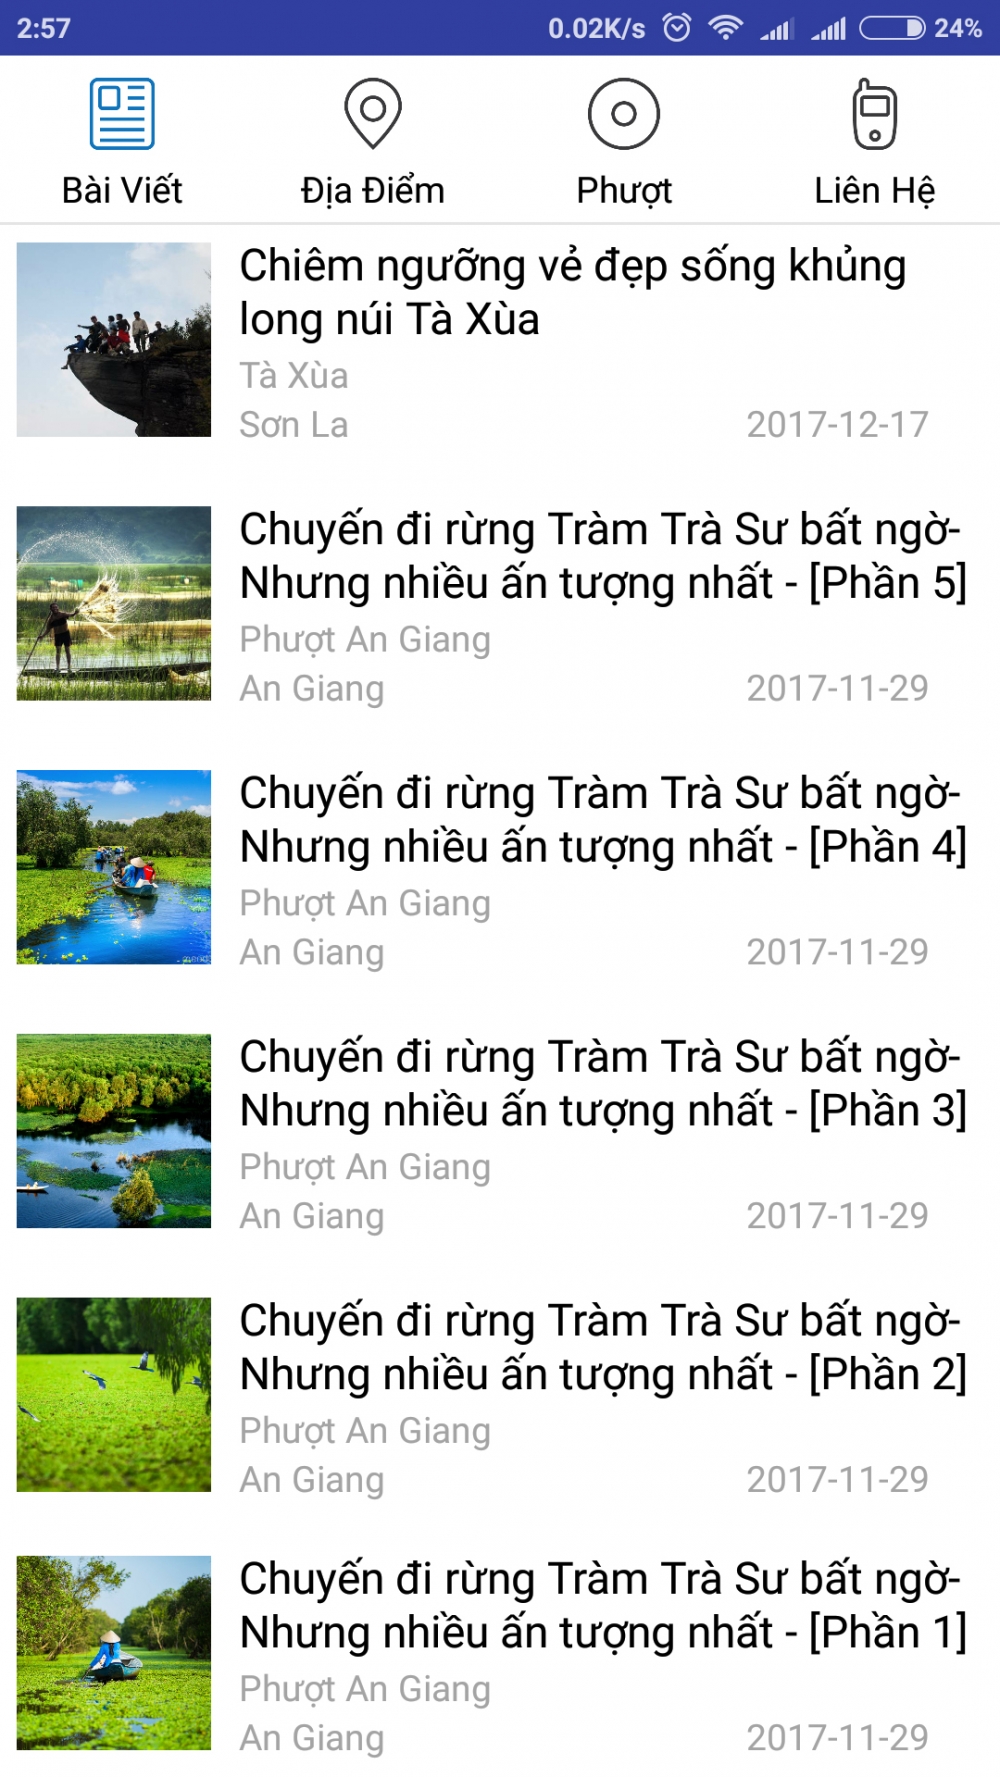 Ung dung phuot chi tiet nhat cho dan phuot - 8